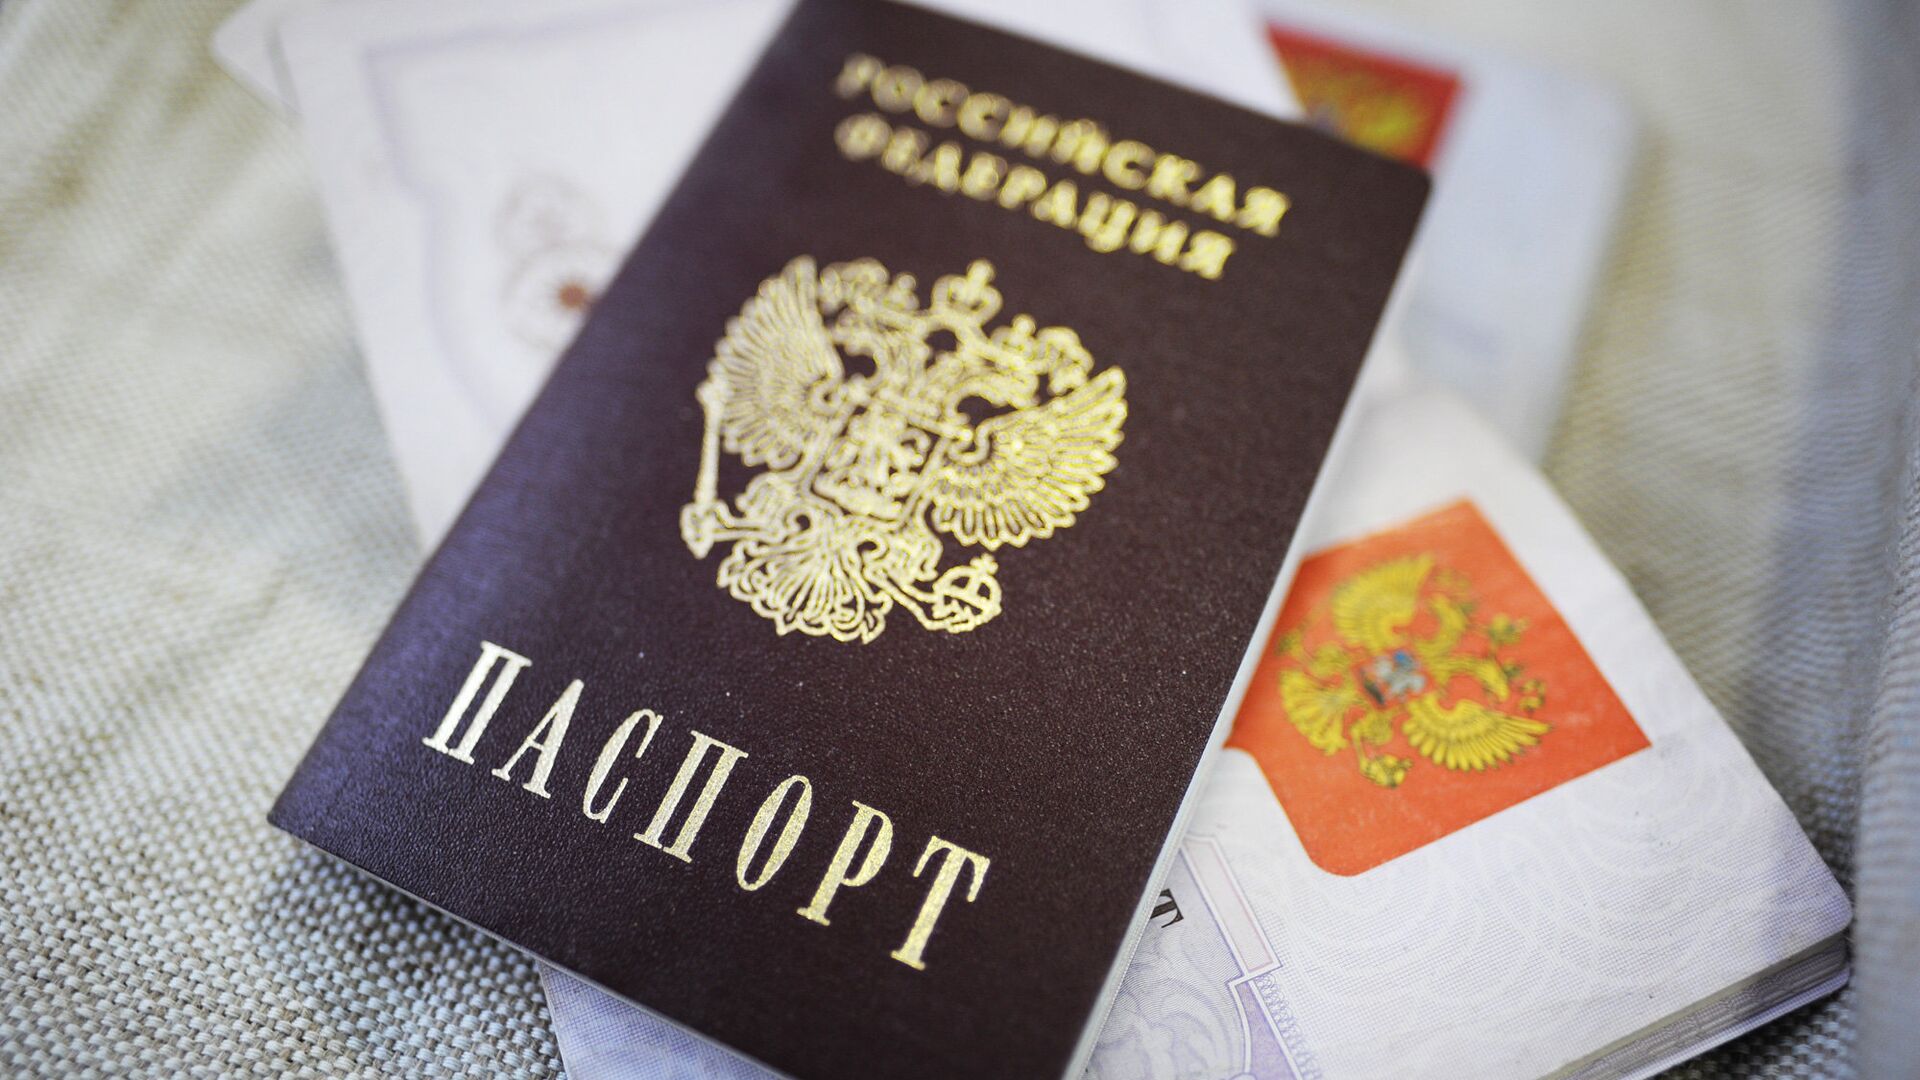 В ГД могут обсудить вопрос о возвращении графы "национальность" в паспорт